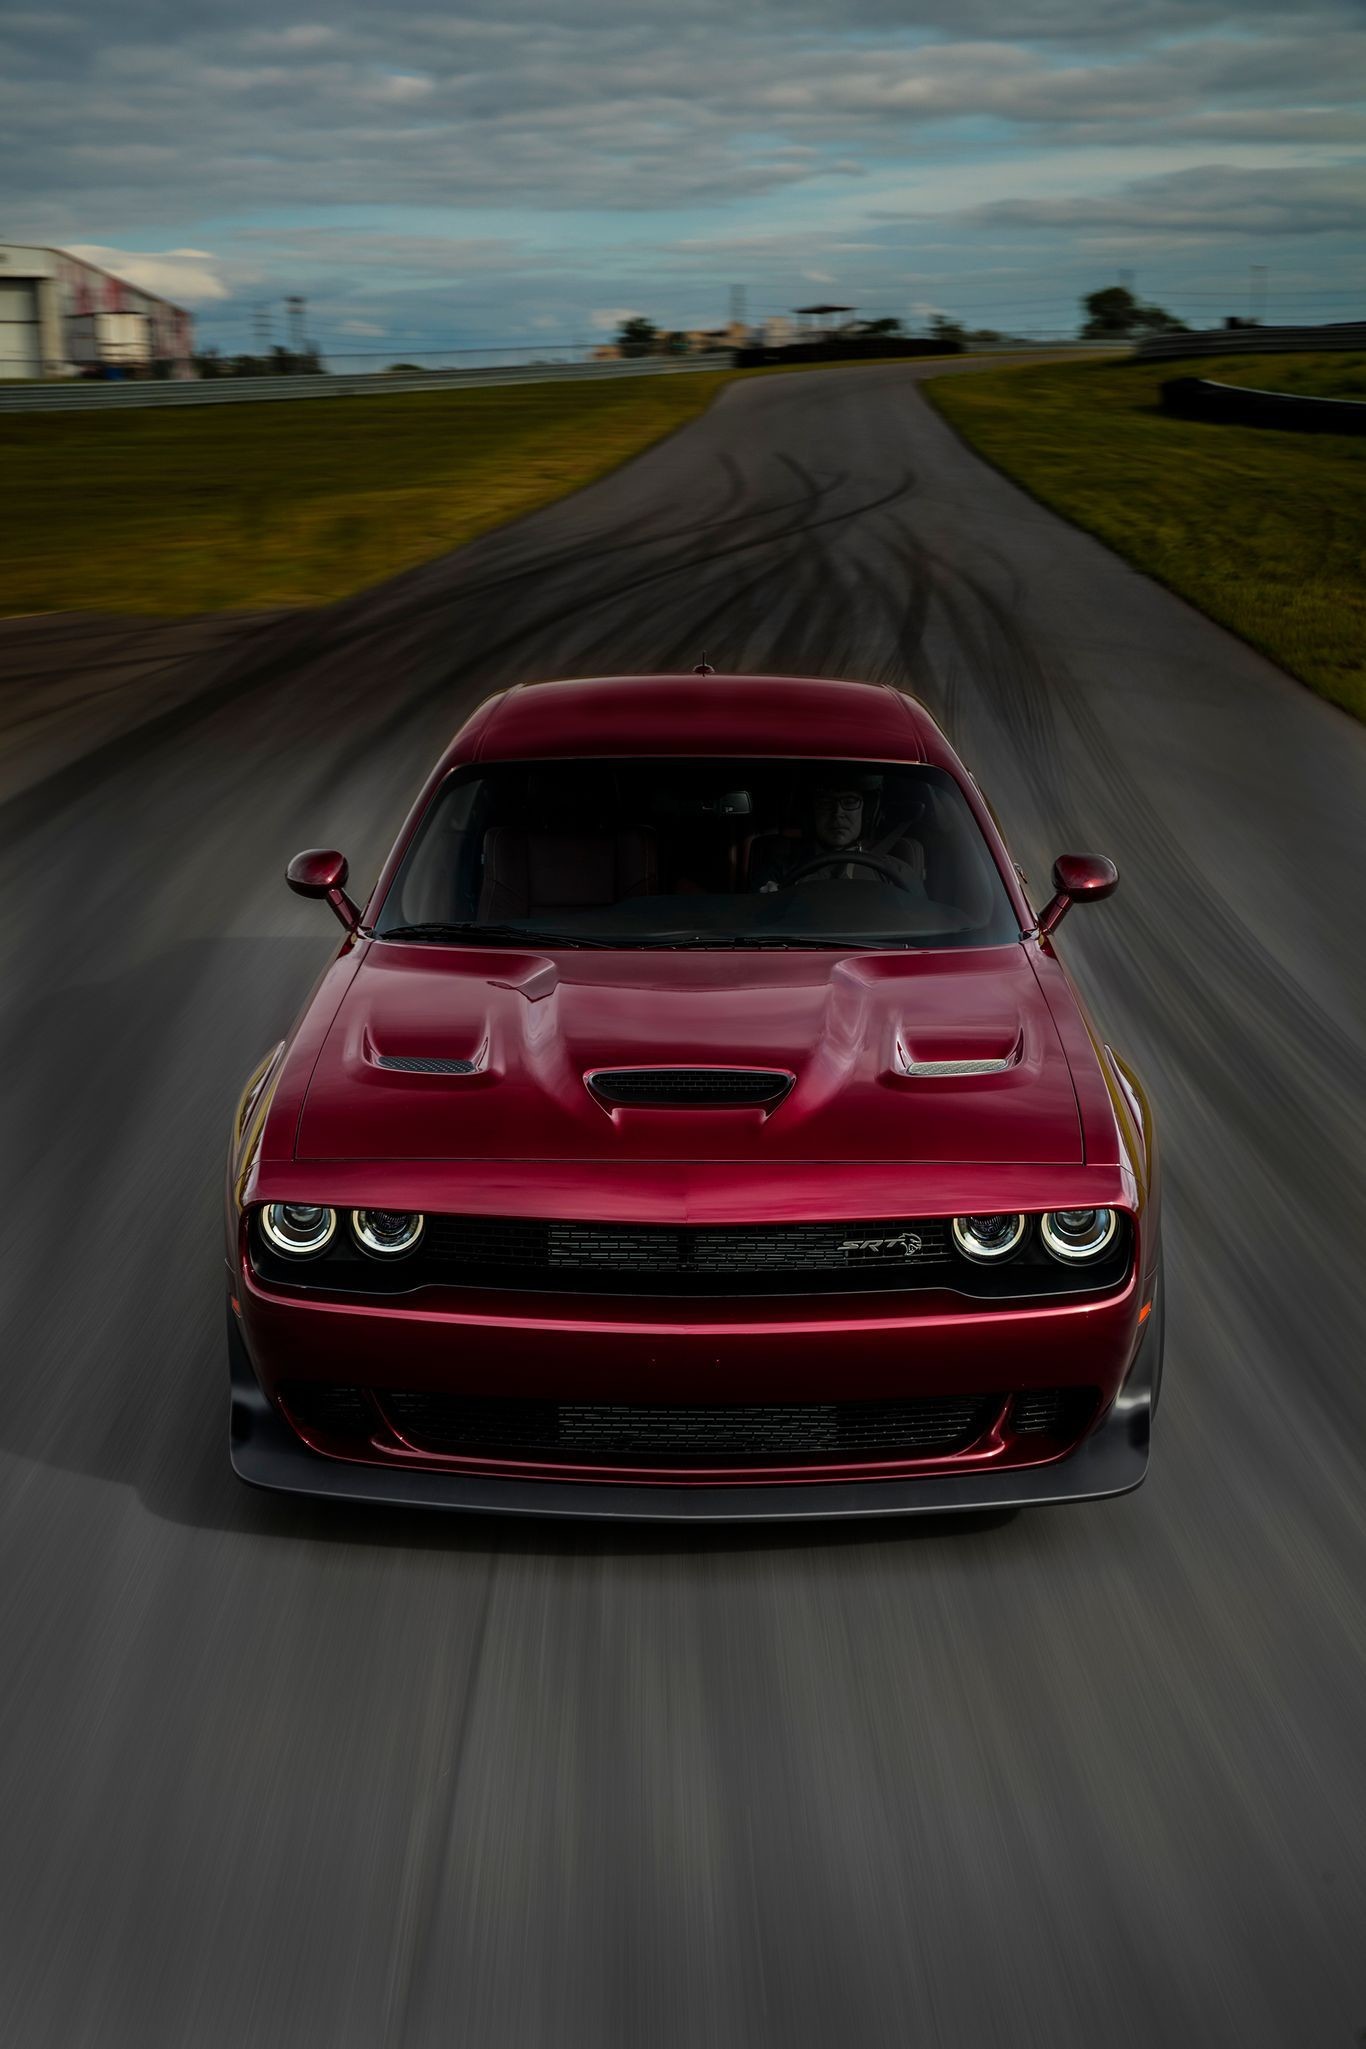 Dodge Challenger iPhone Wallpaper Image